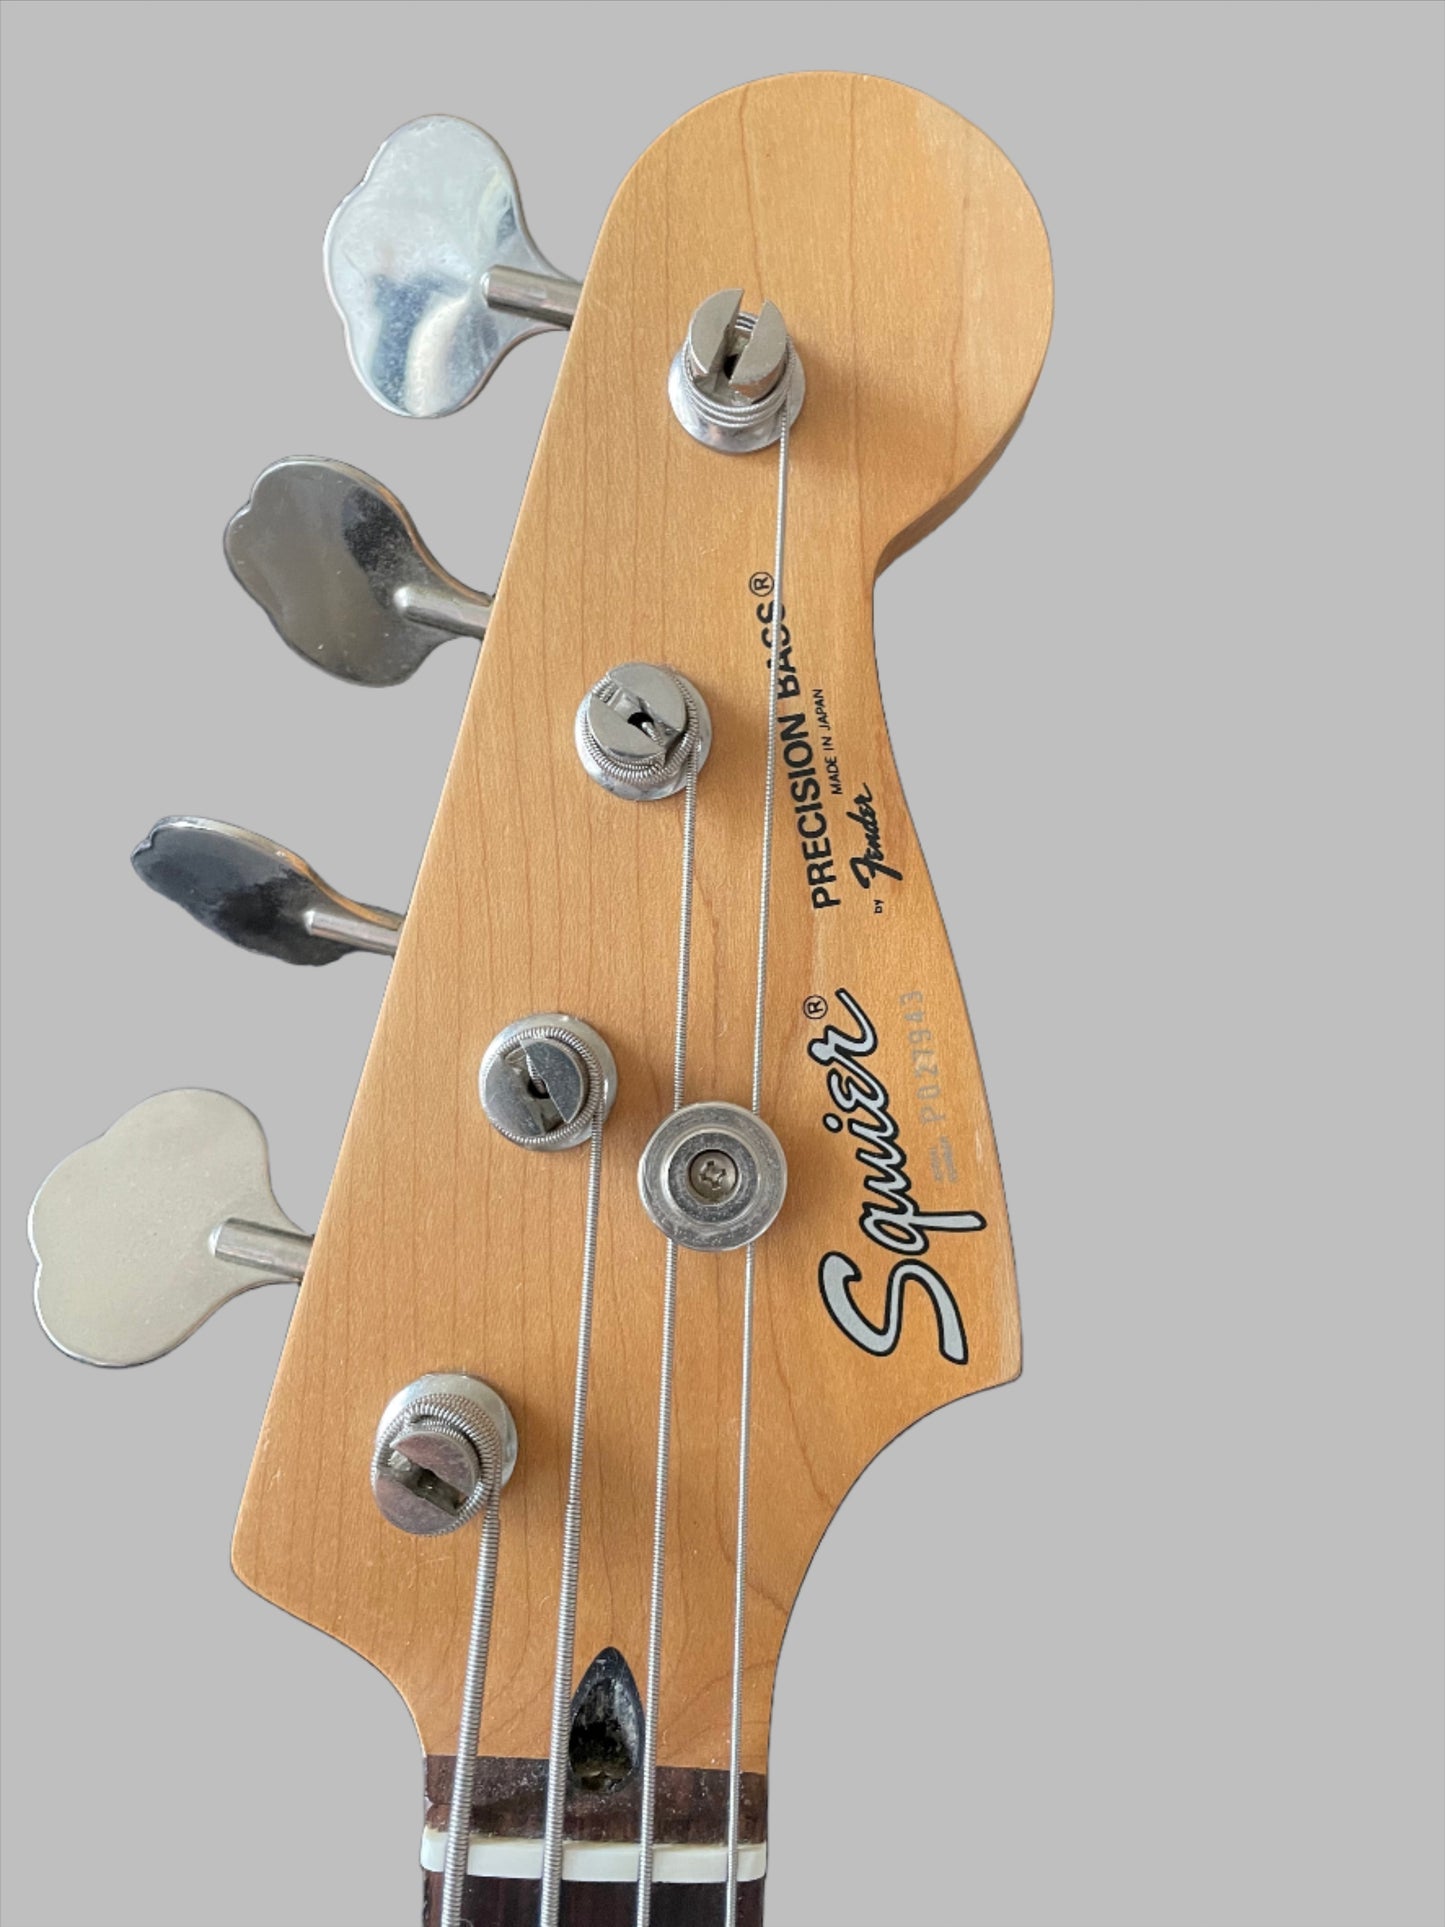 1993 Vintage Squier by Fender Precision P Bass Guitar. Fujigen